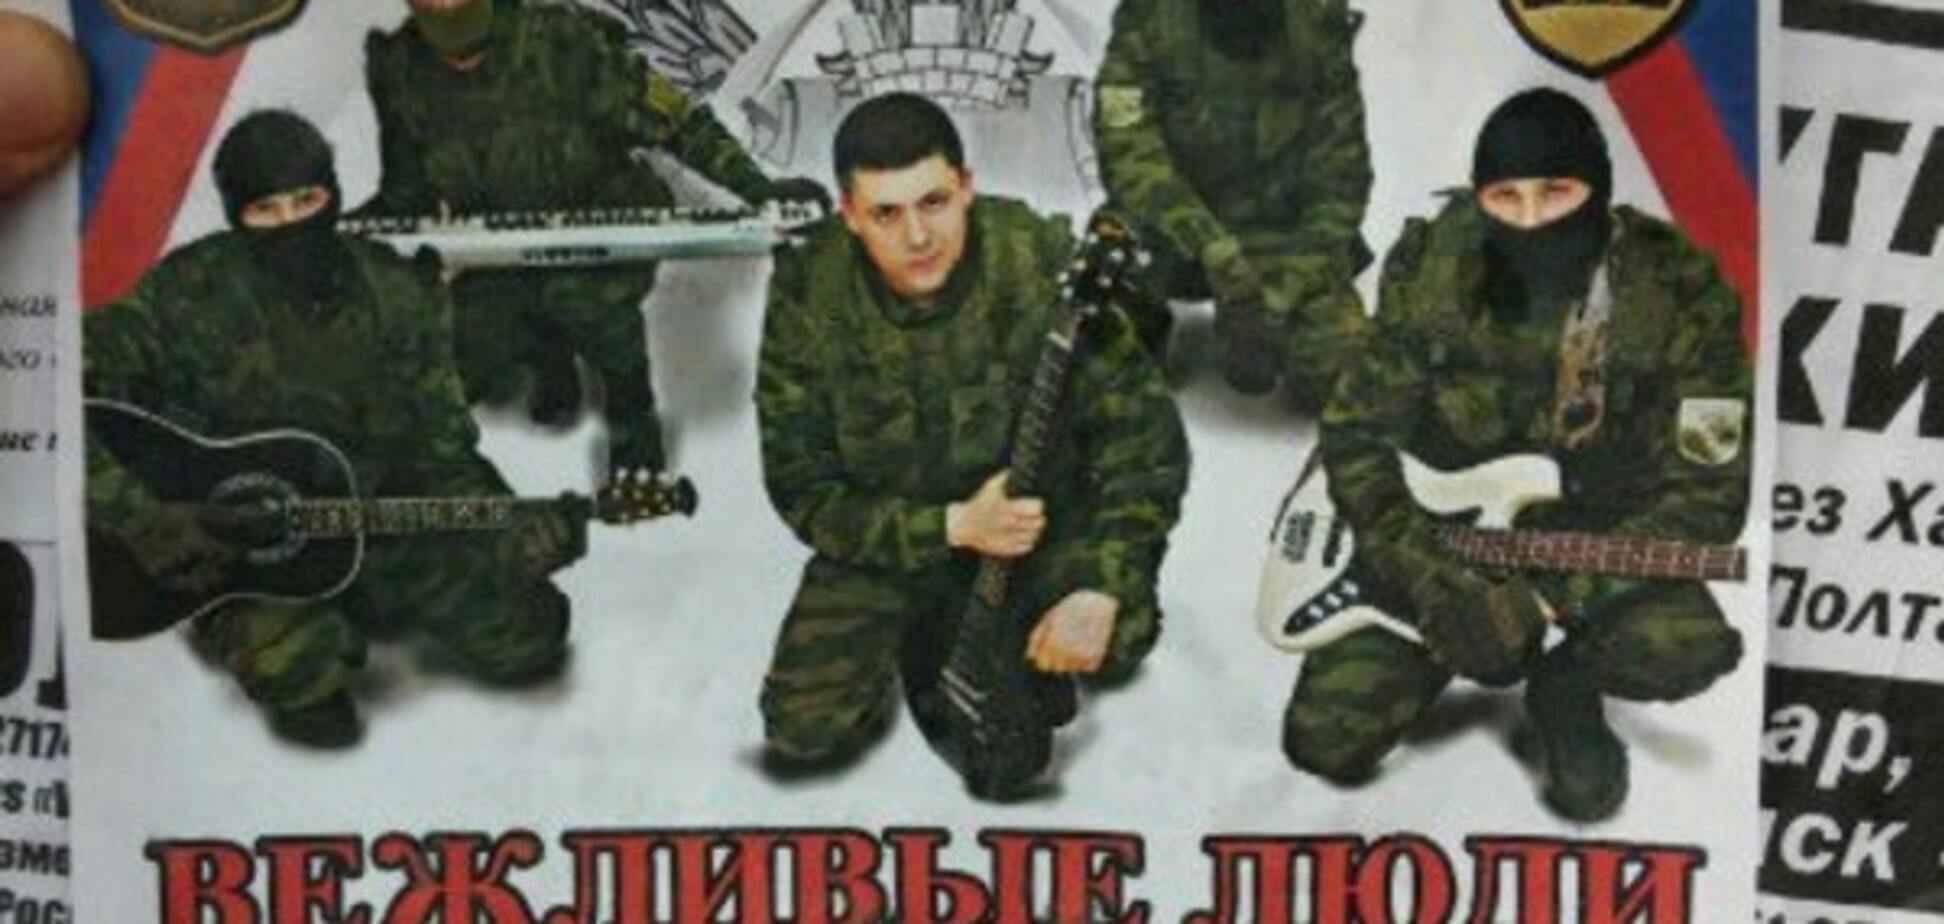 Психологическое оружие: 'Вежливые люди' с гитарами решили 'вынести мозг' луганчанам